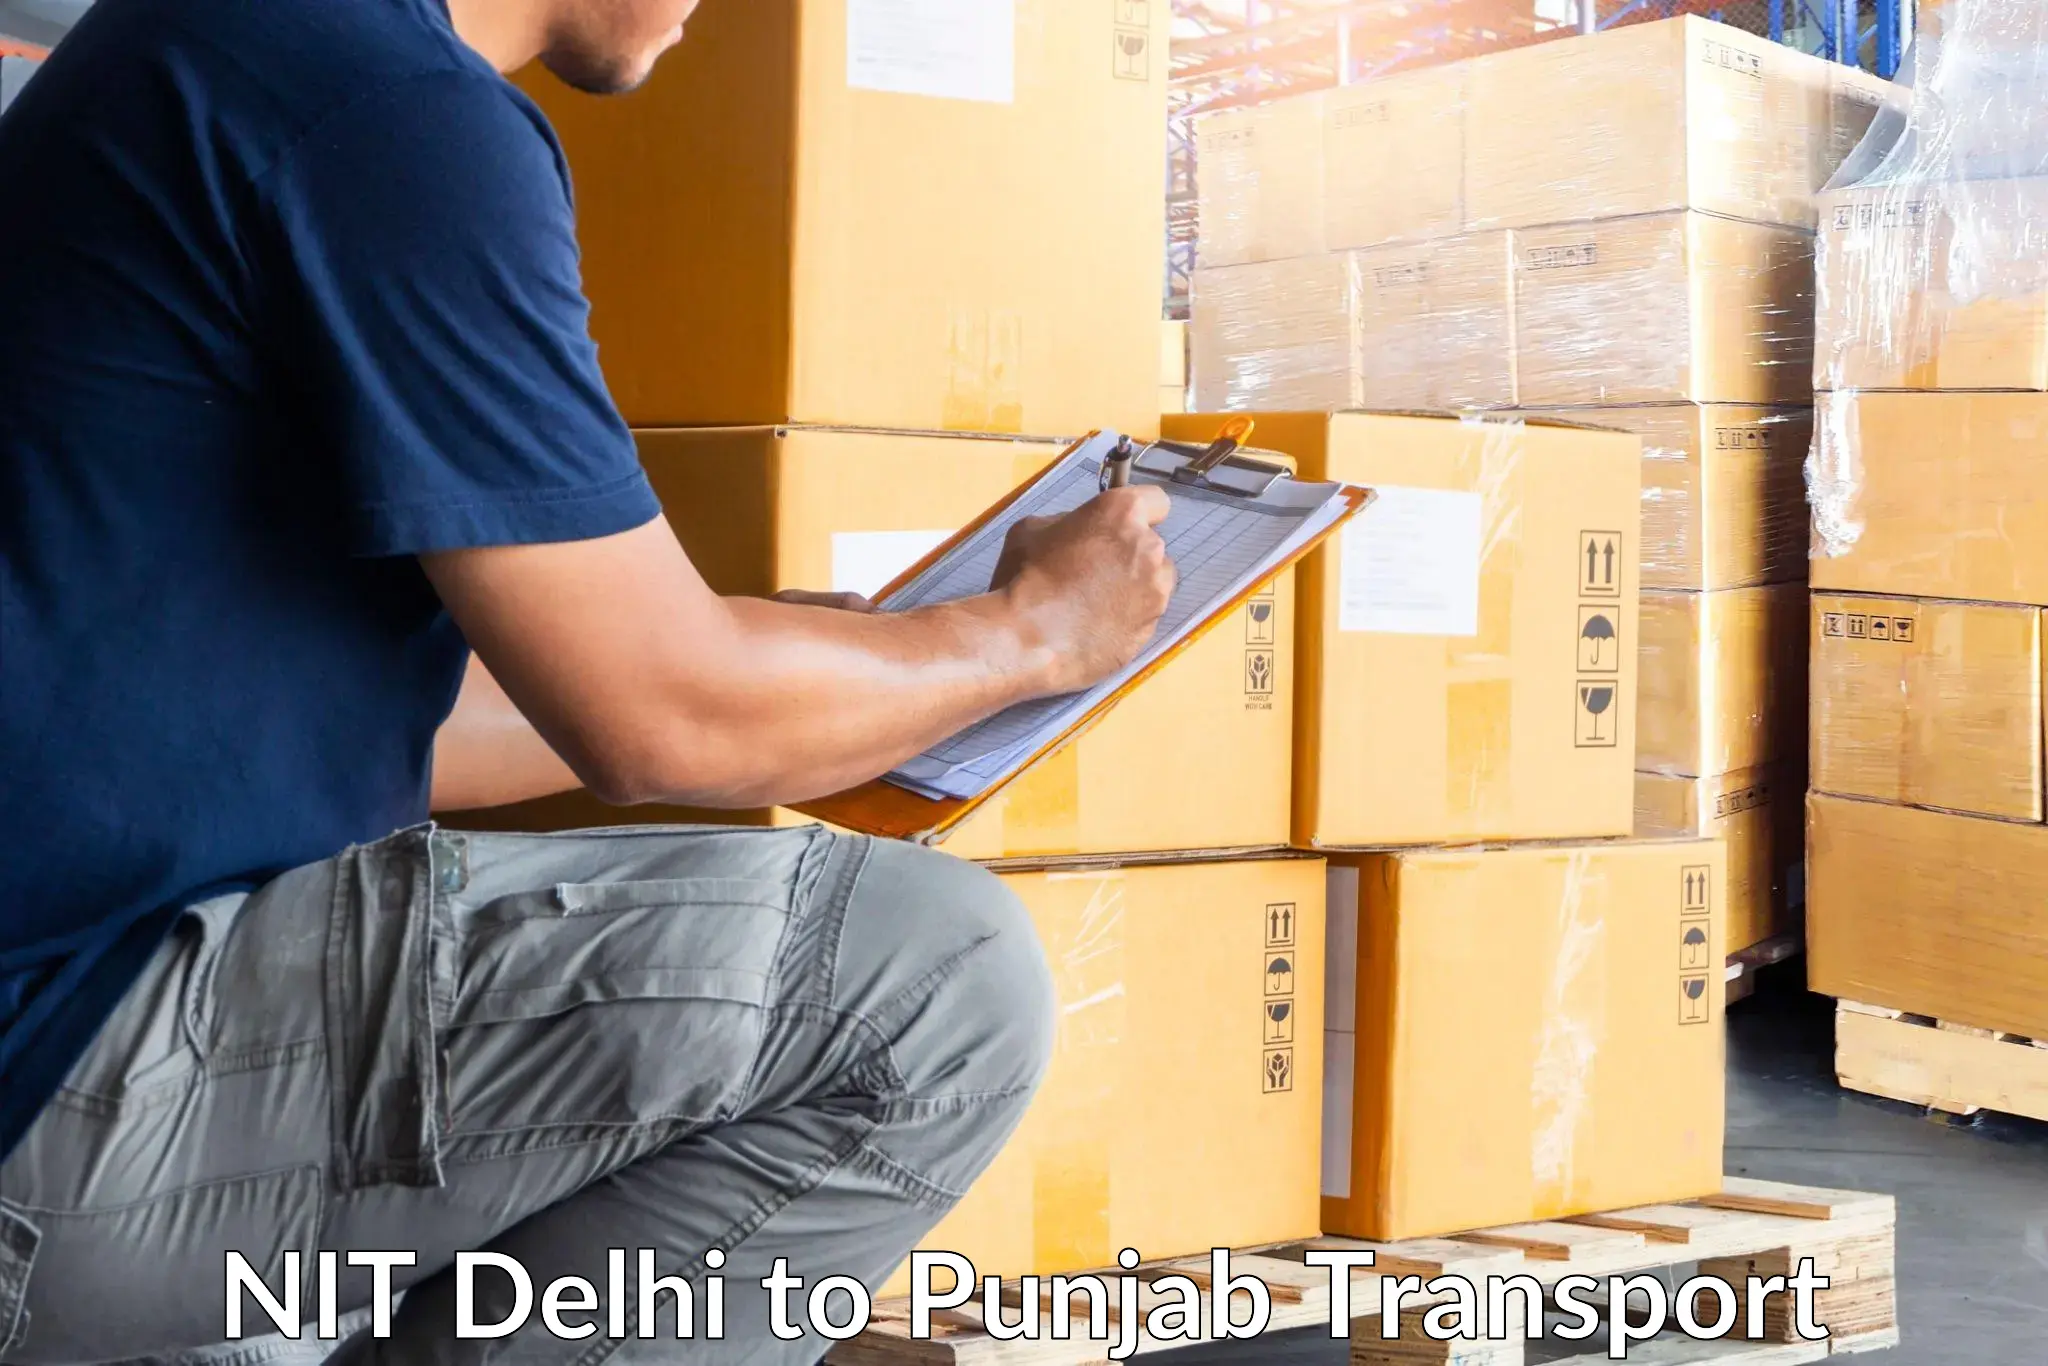 India truck logistics services NIT Delhi to Punjab